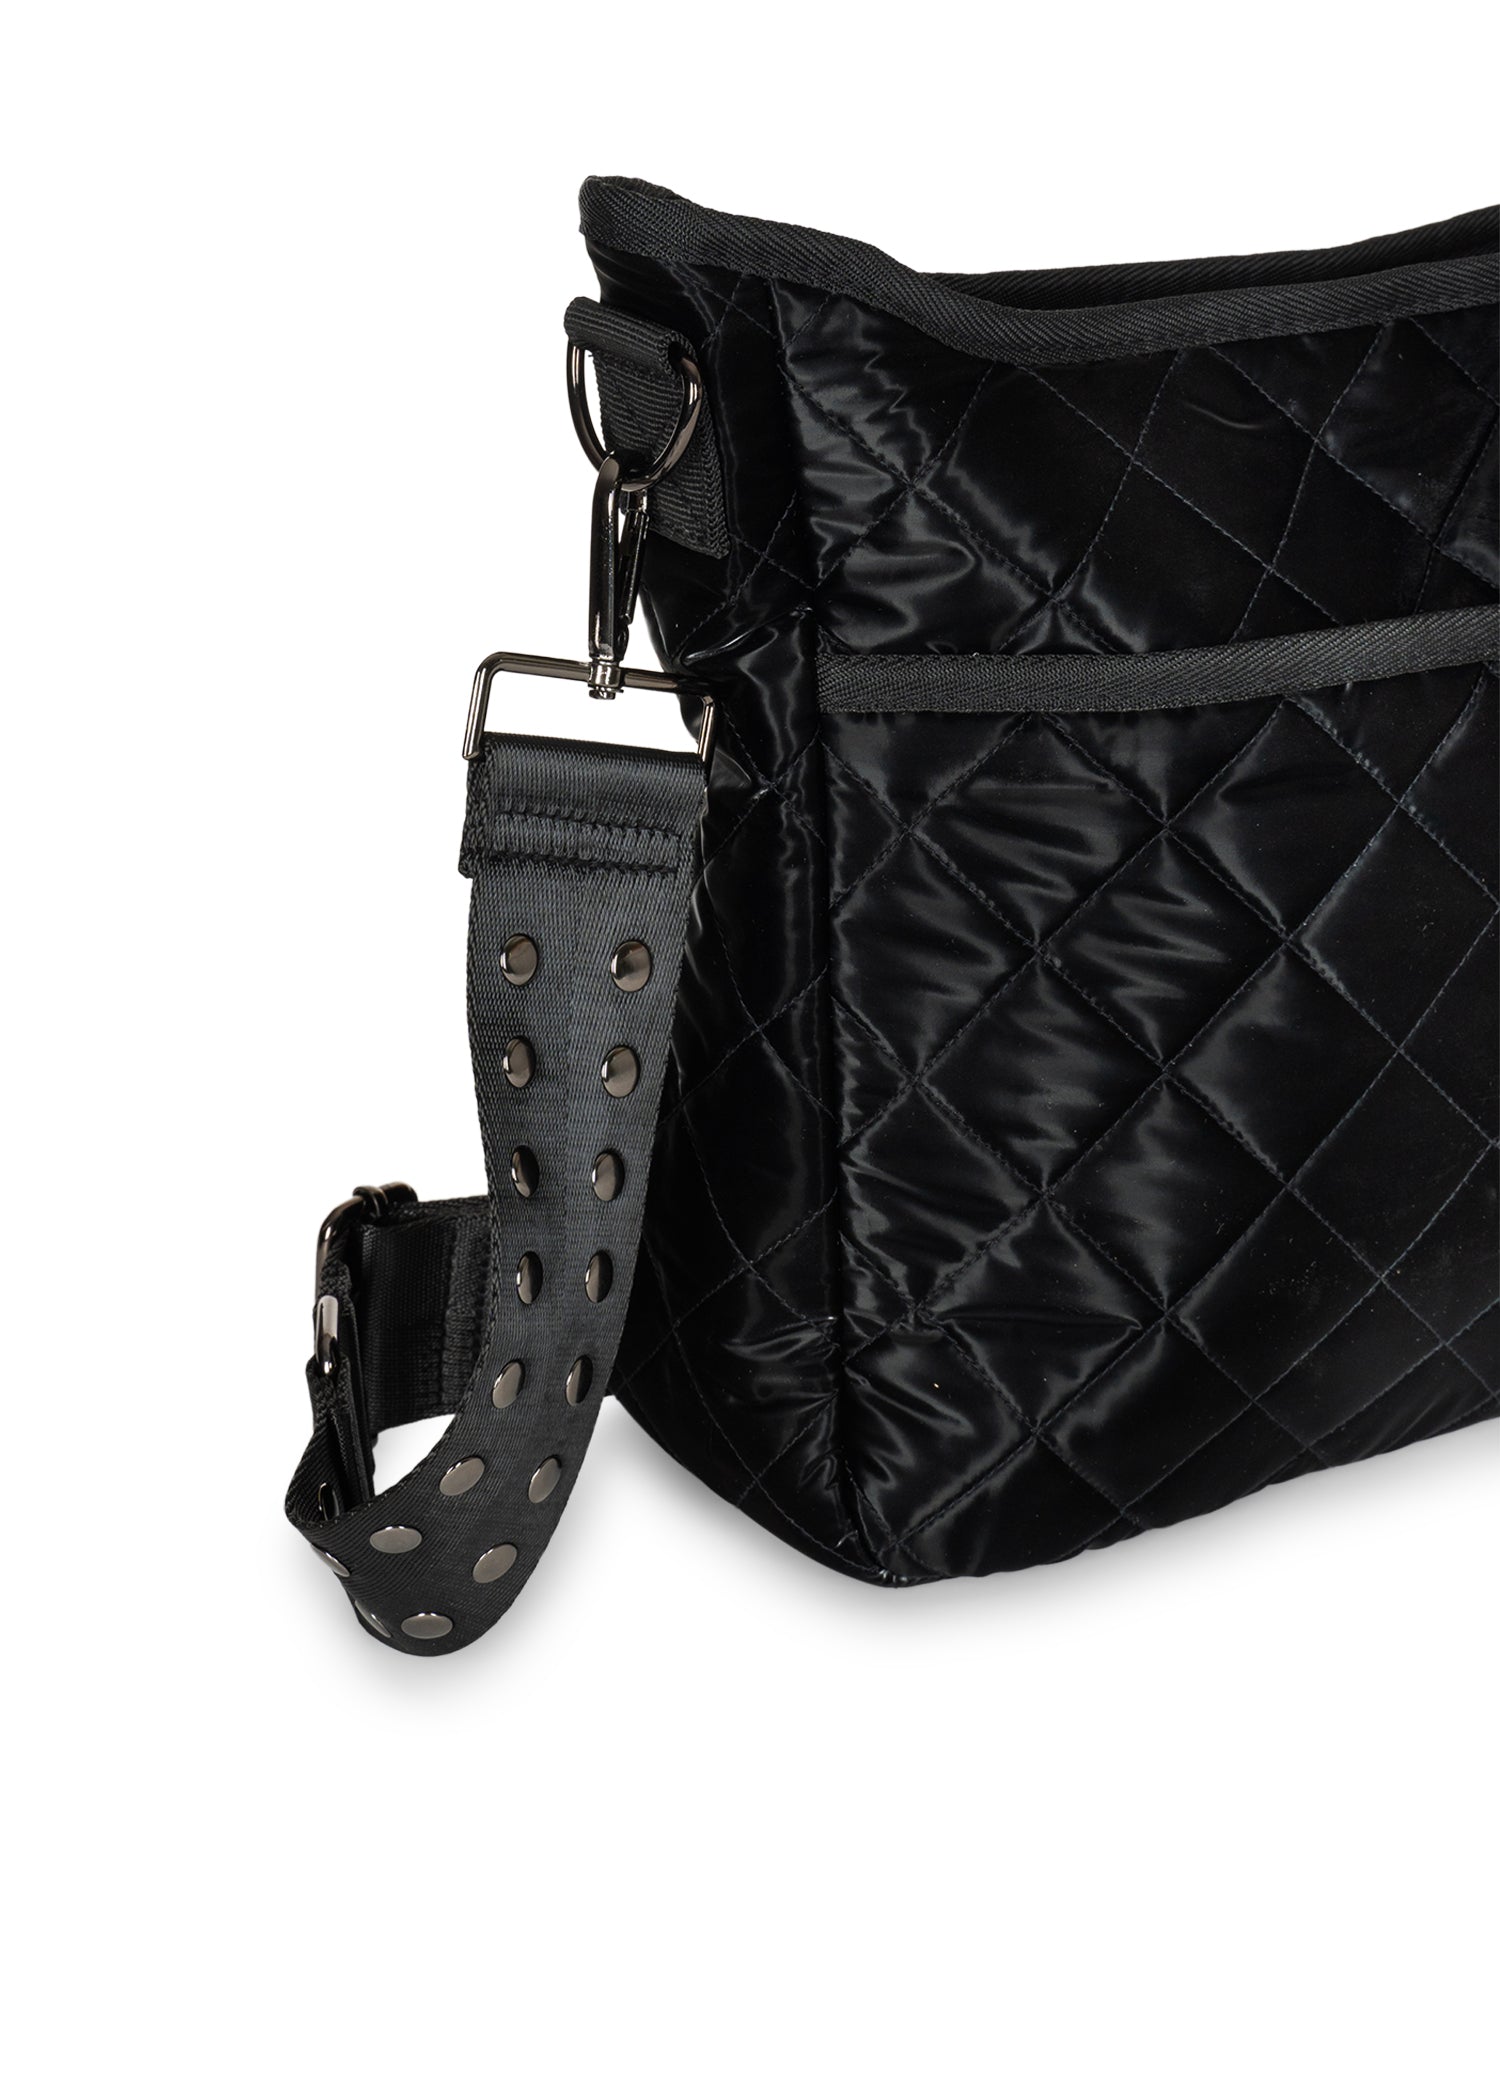 Haute Shore - Perri Beam Puffer Cross-Body Bag: Handbags